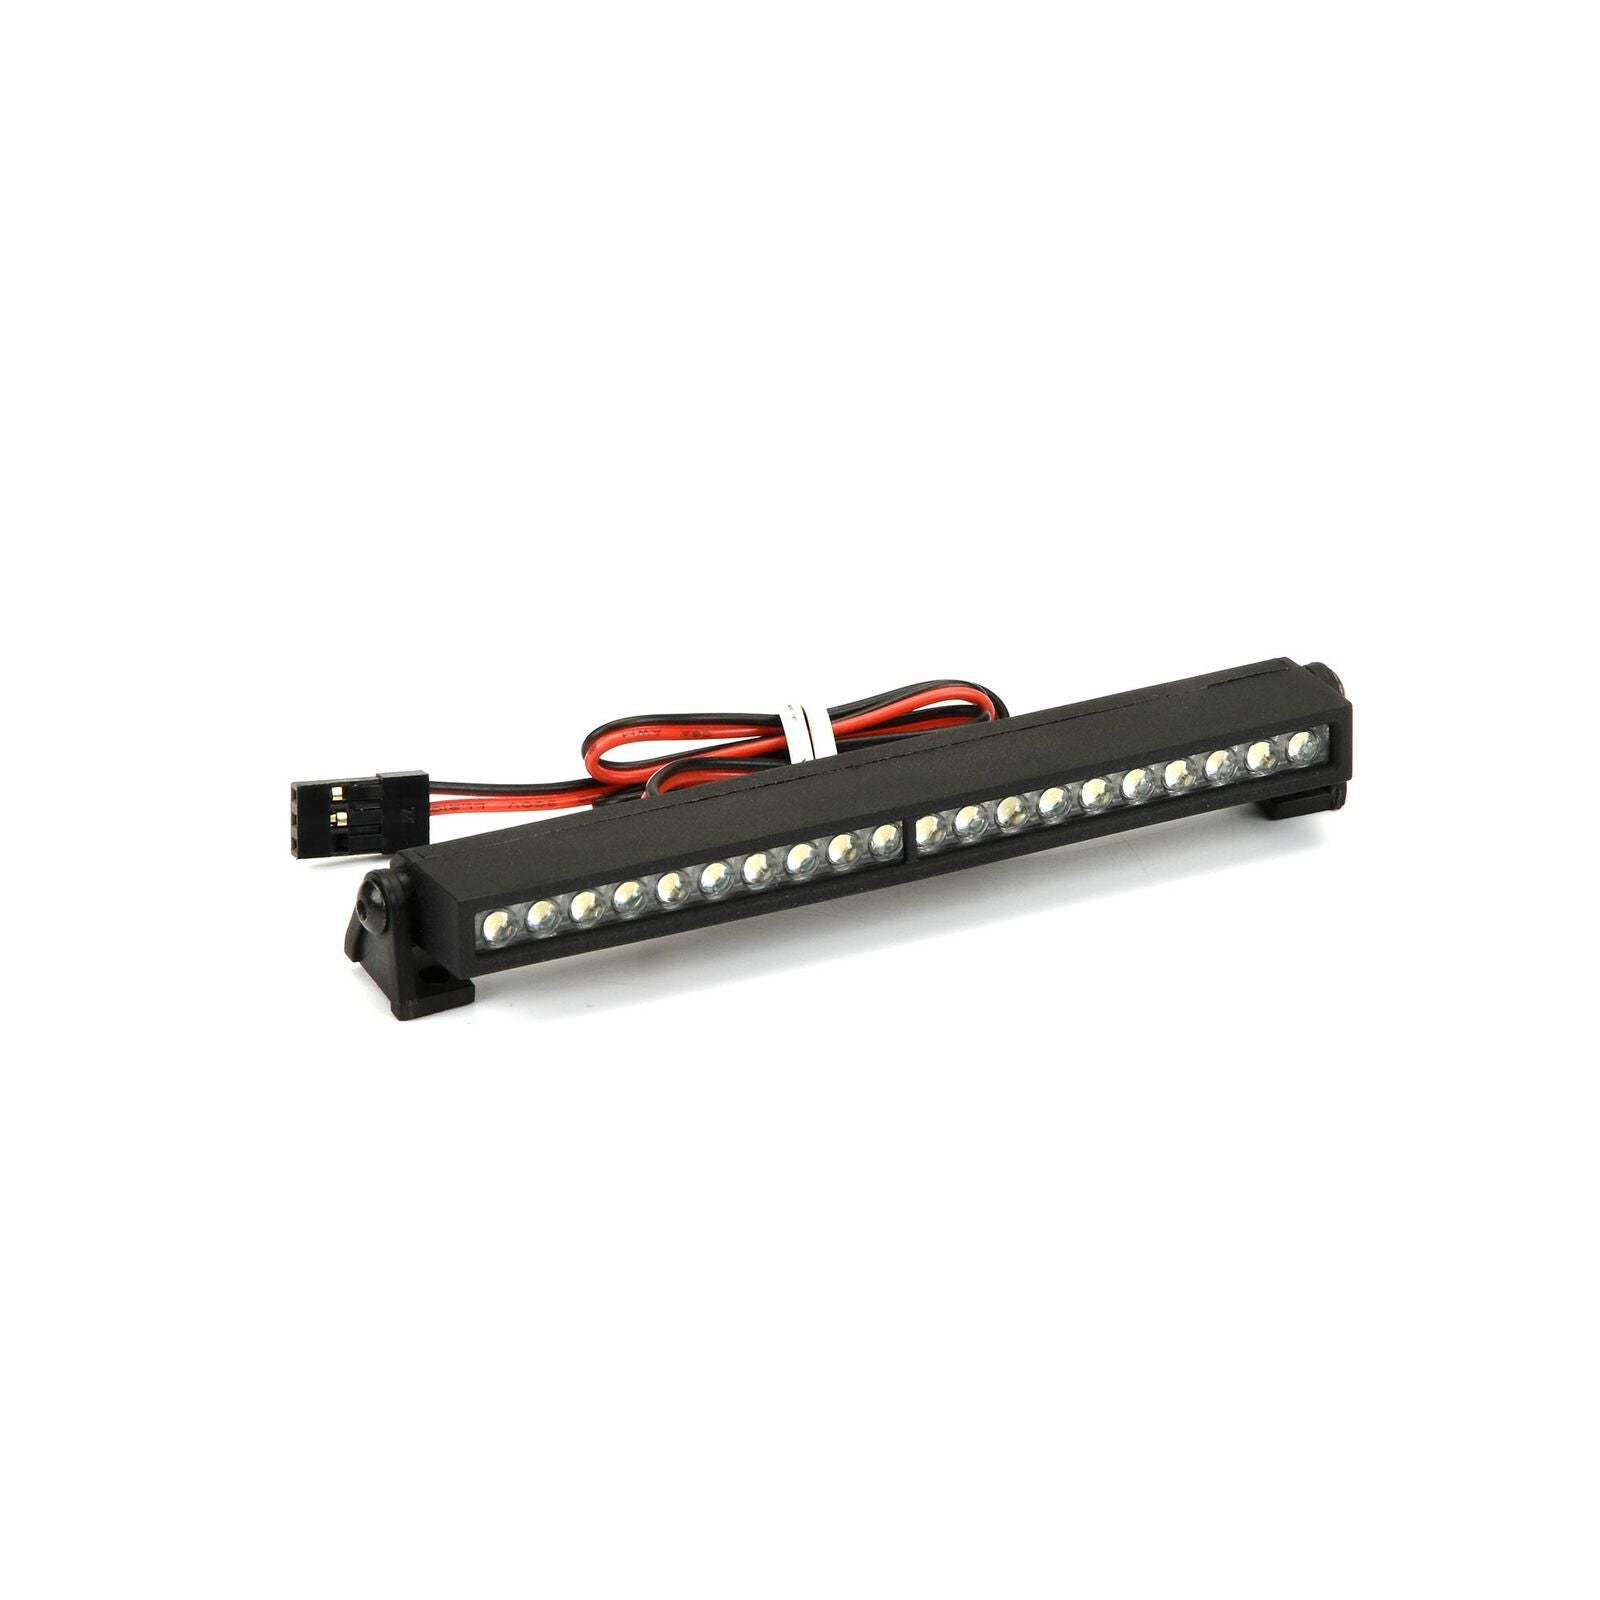 PROLINE 6276-01 4" Super-Bright LED Light Bar Kit 6V-12V (Straight)